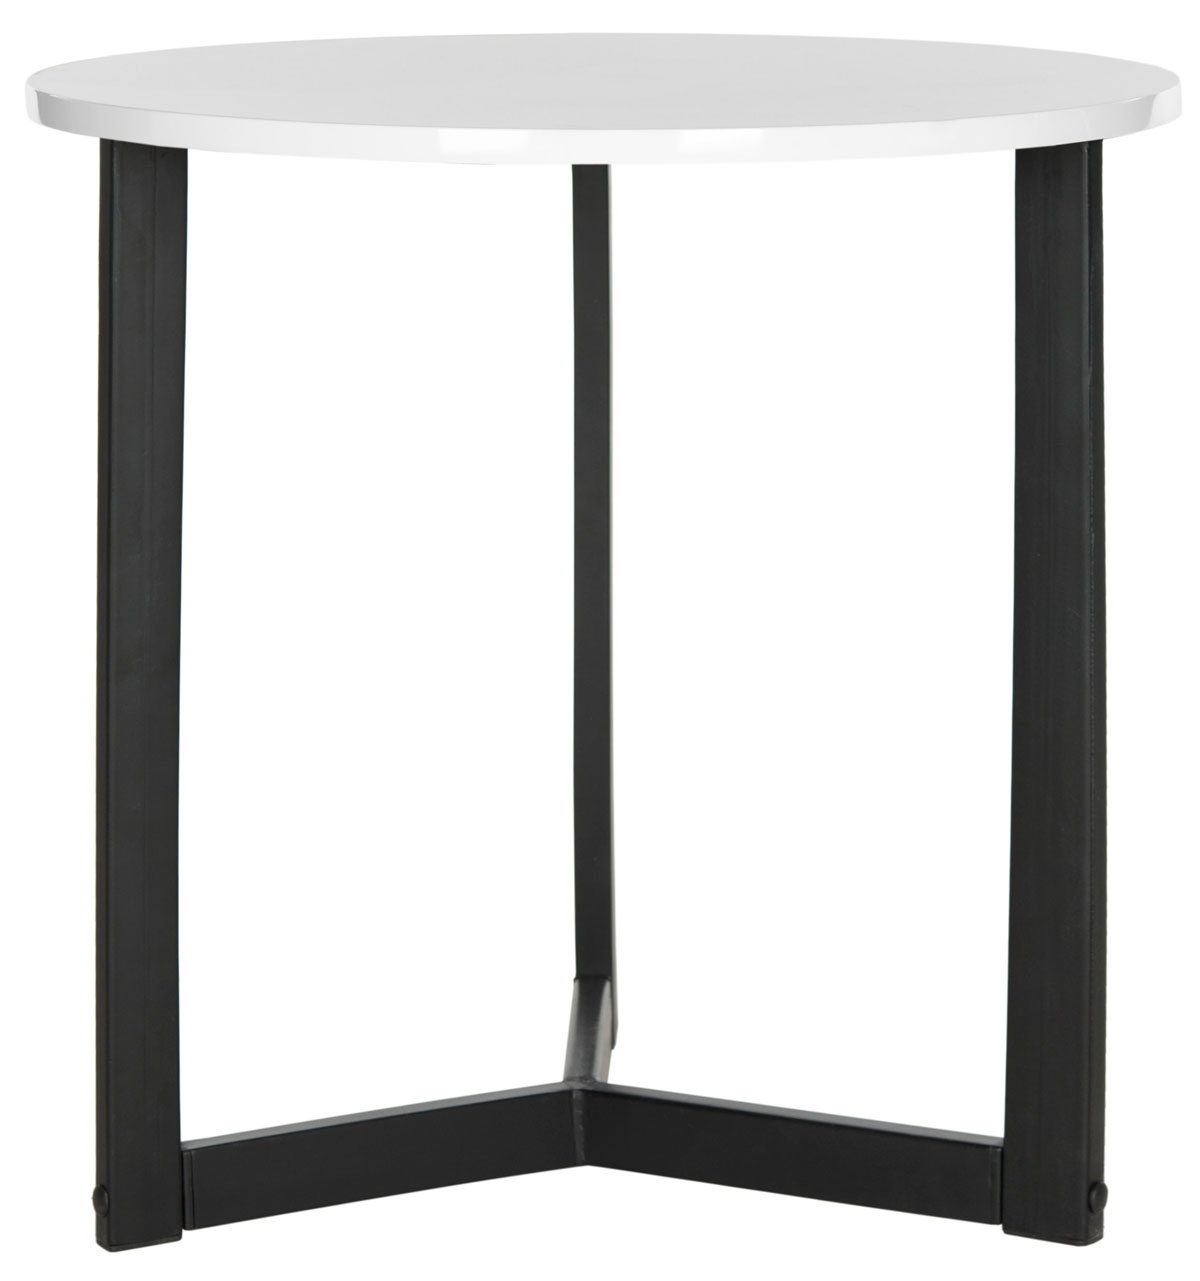 Leonard Mid Century Modern Wood End Table - White/Black - Safavieh - Image 0